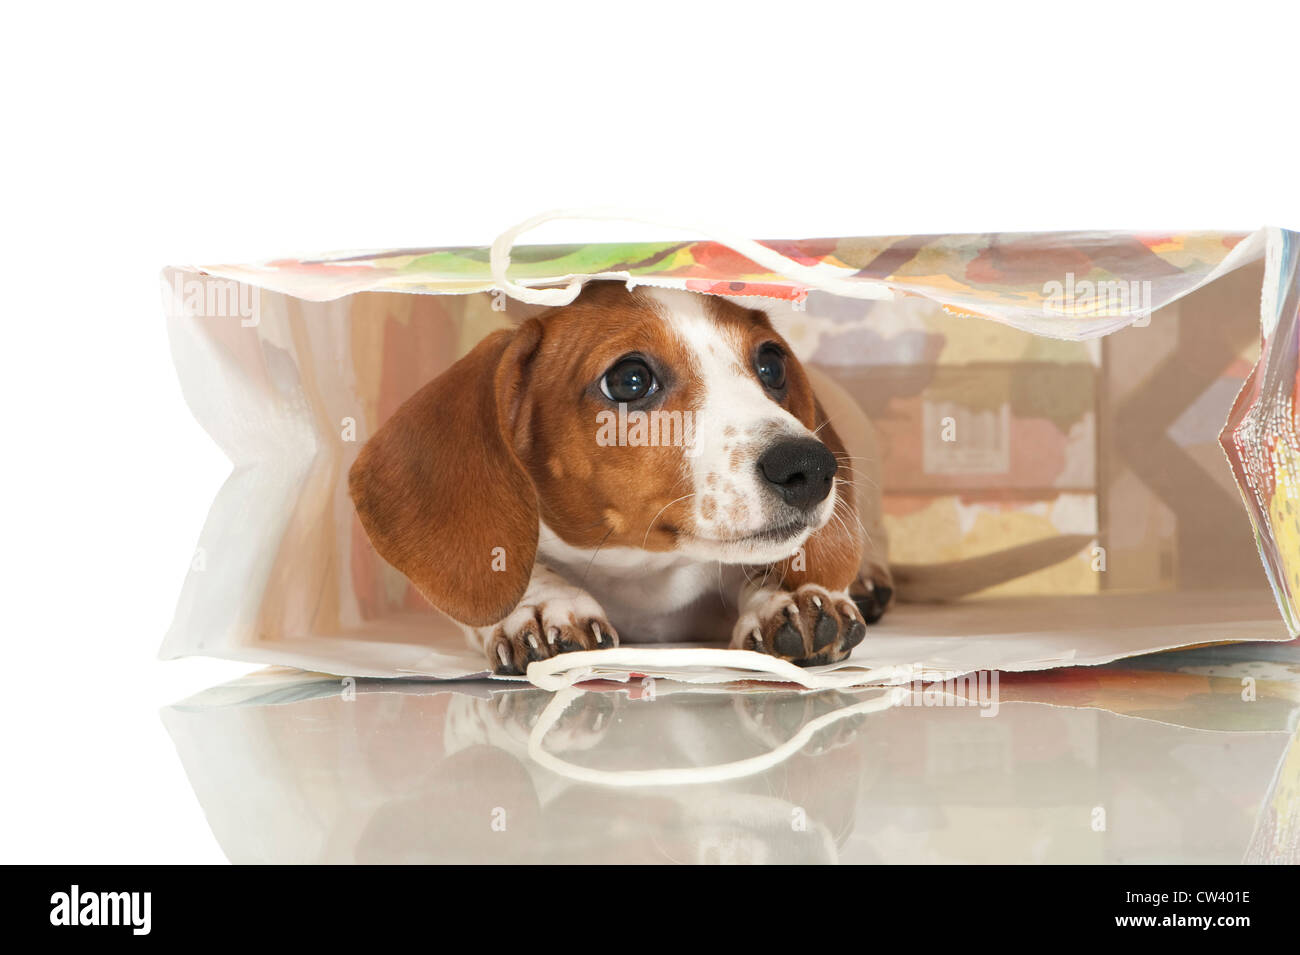 Bassotto. Buon pezzati puppy in un supporto di carta in borsa. Studio Immagine contro uno sfondo bianco Foto Stock